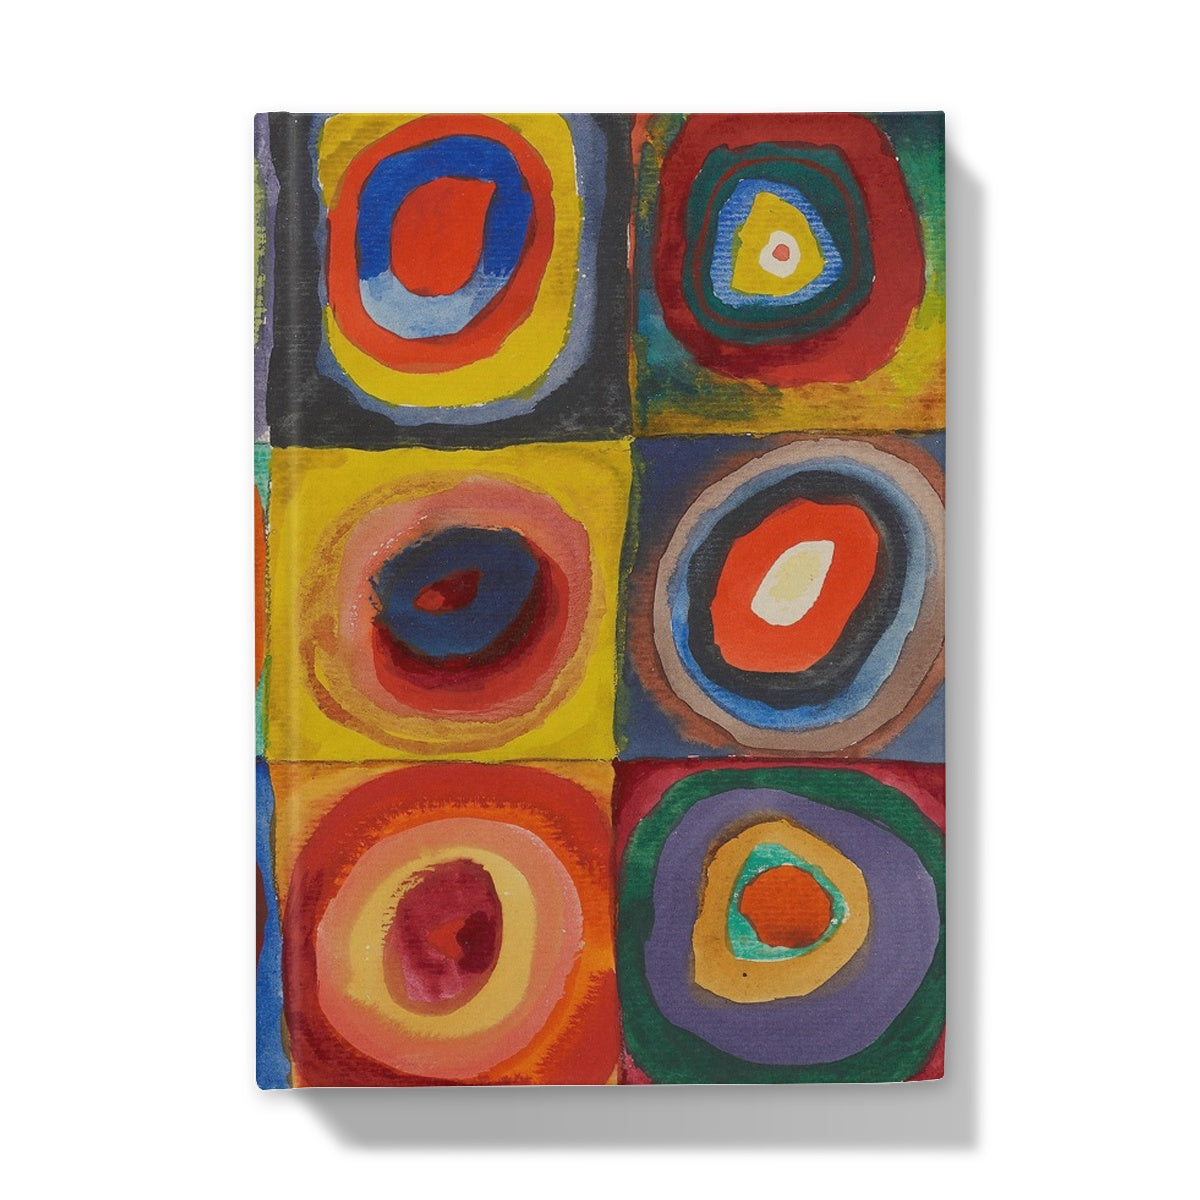 Étude des couleurs - Carrés aux anneaux concentriques de Wassily Kandinsky, 1913 - Carnet cartonné